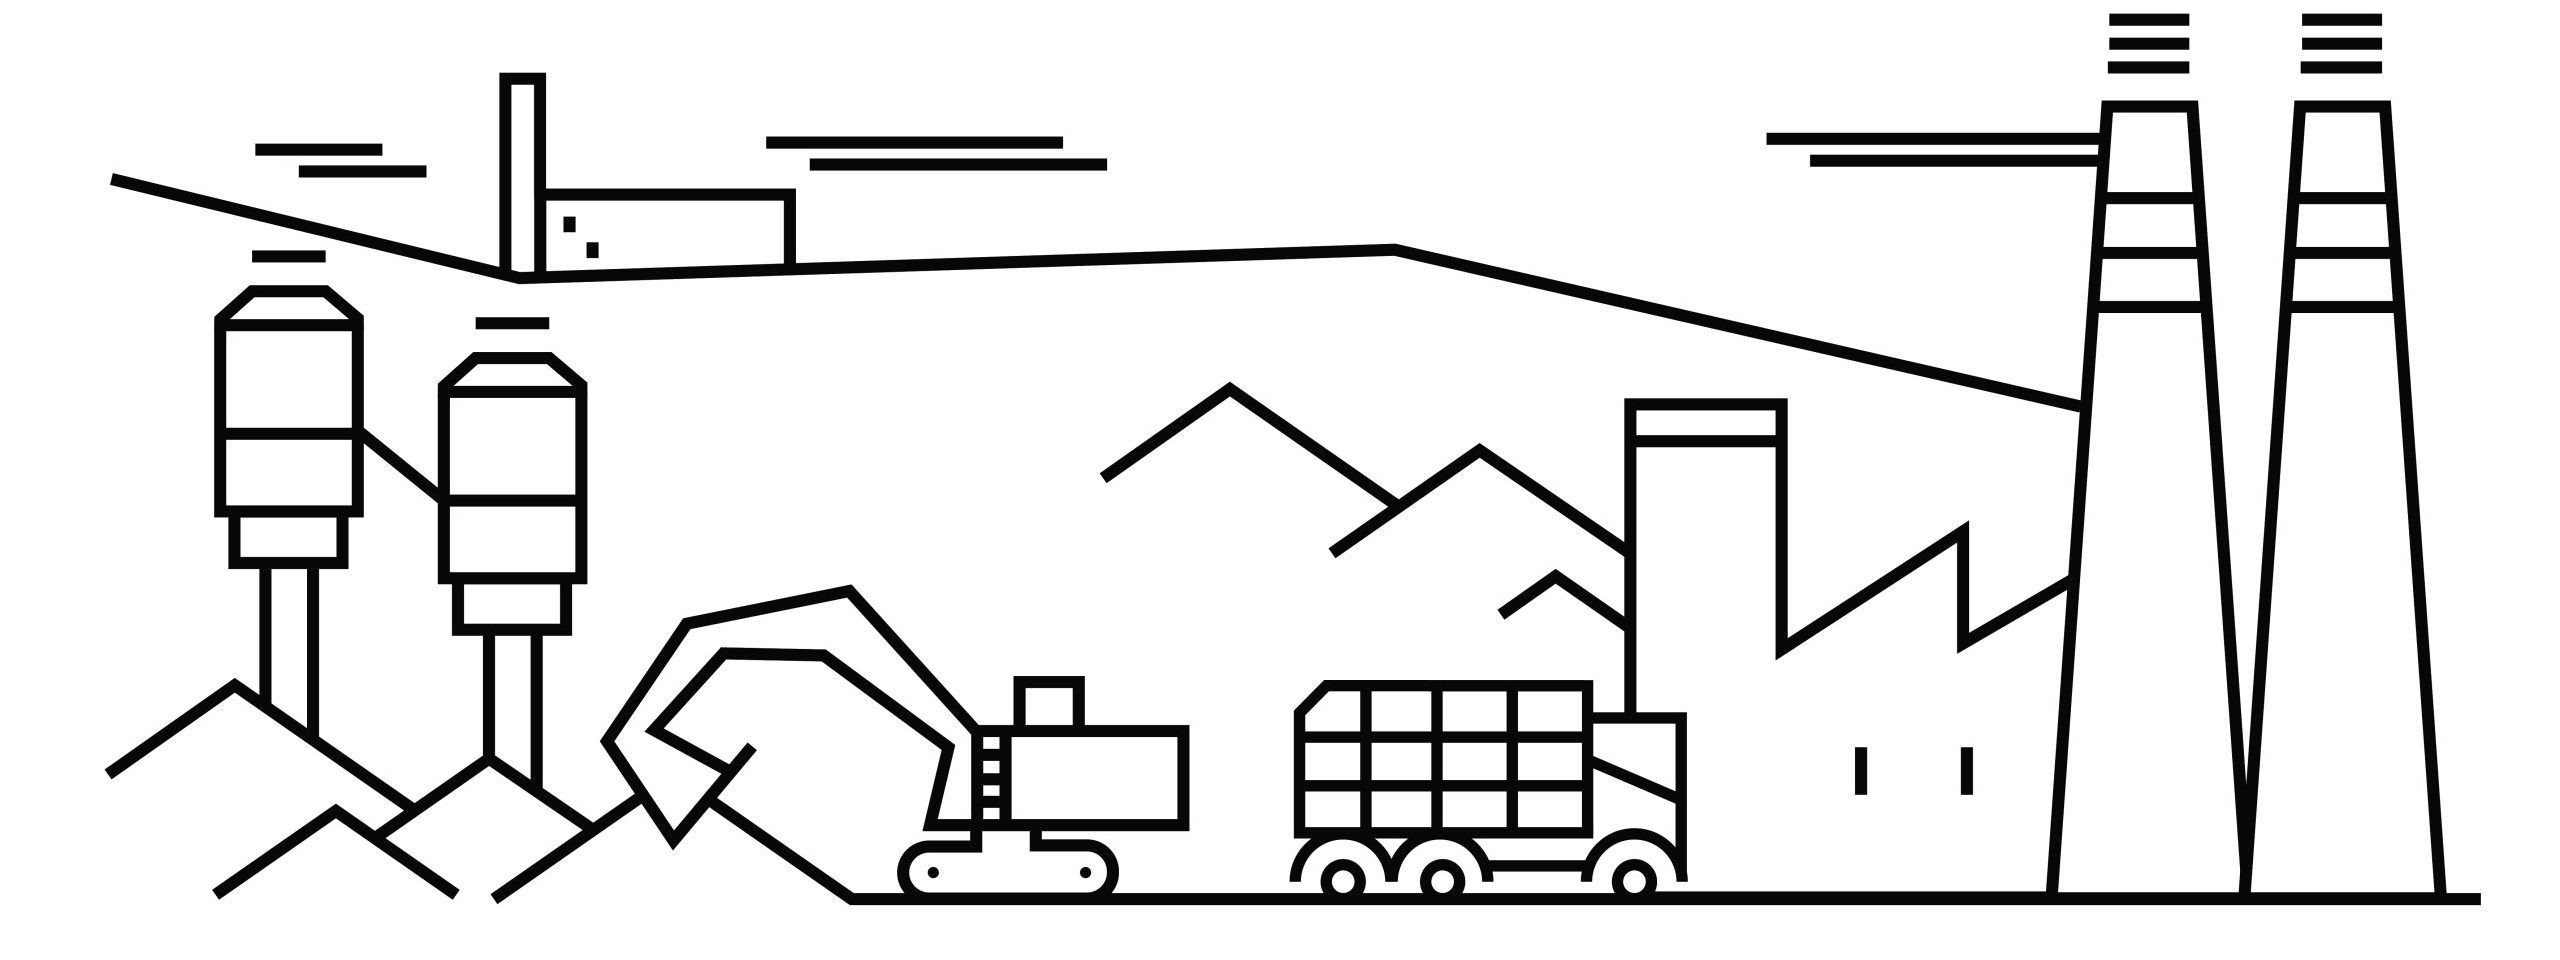 Sustainable Mining Illustration